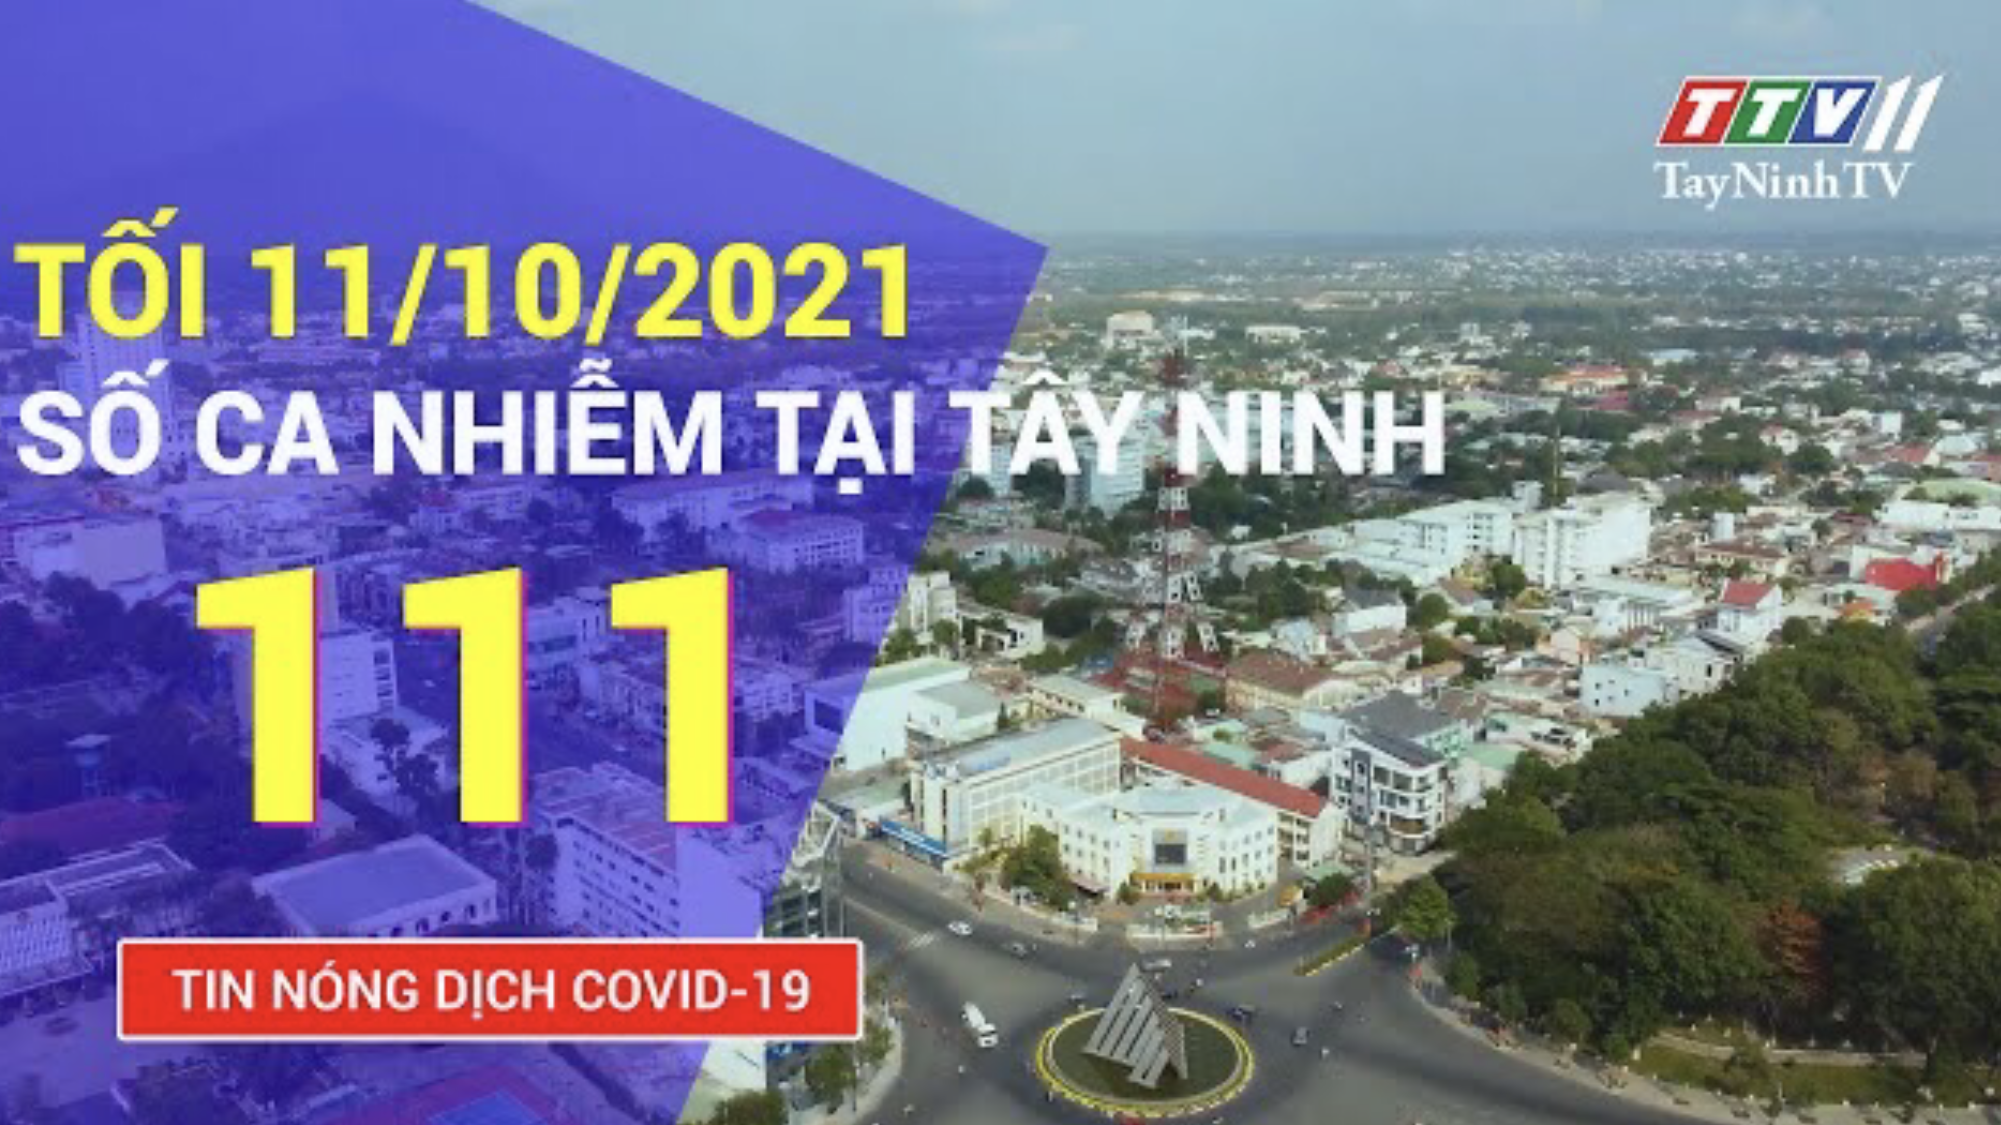 TIN TỨC COVID-19 TỐI 11/10/2021 | Tin tức hôm nay | TayNinhTV